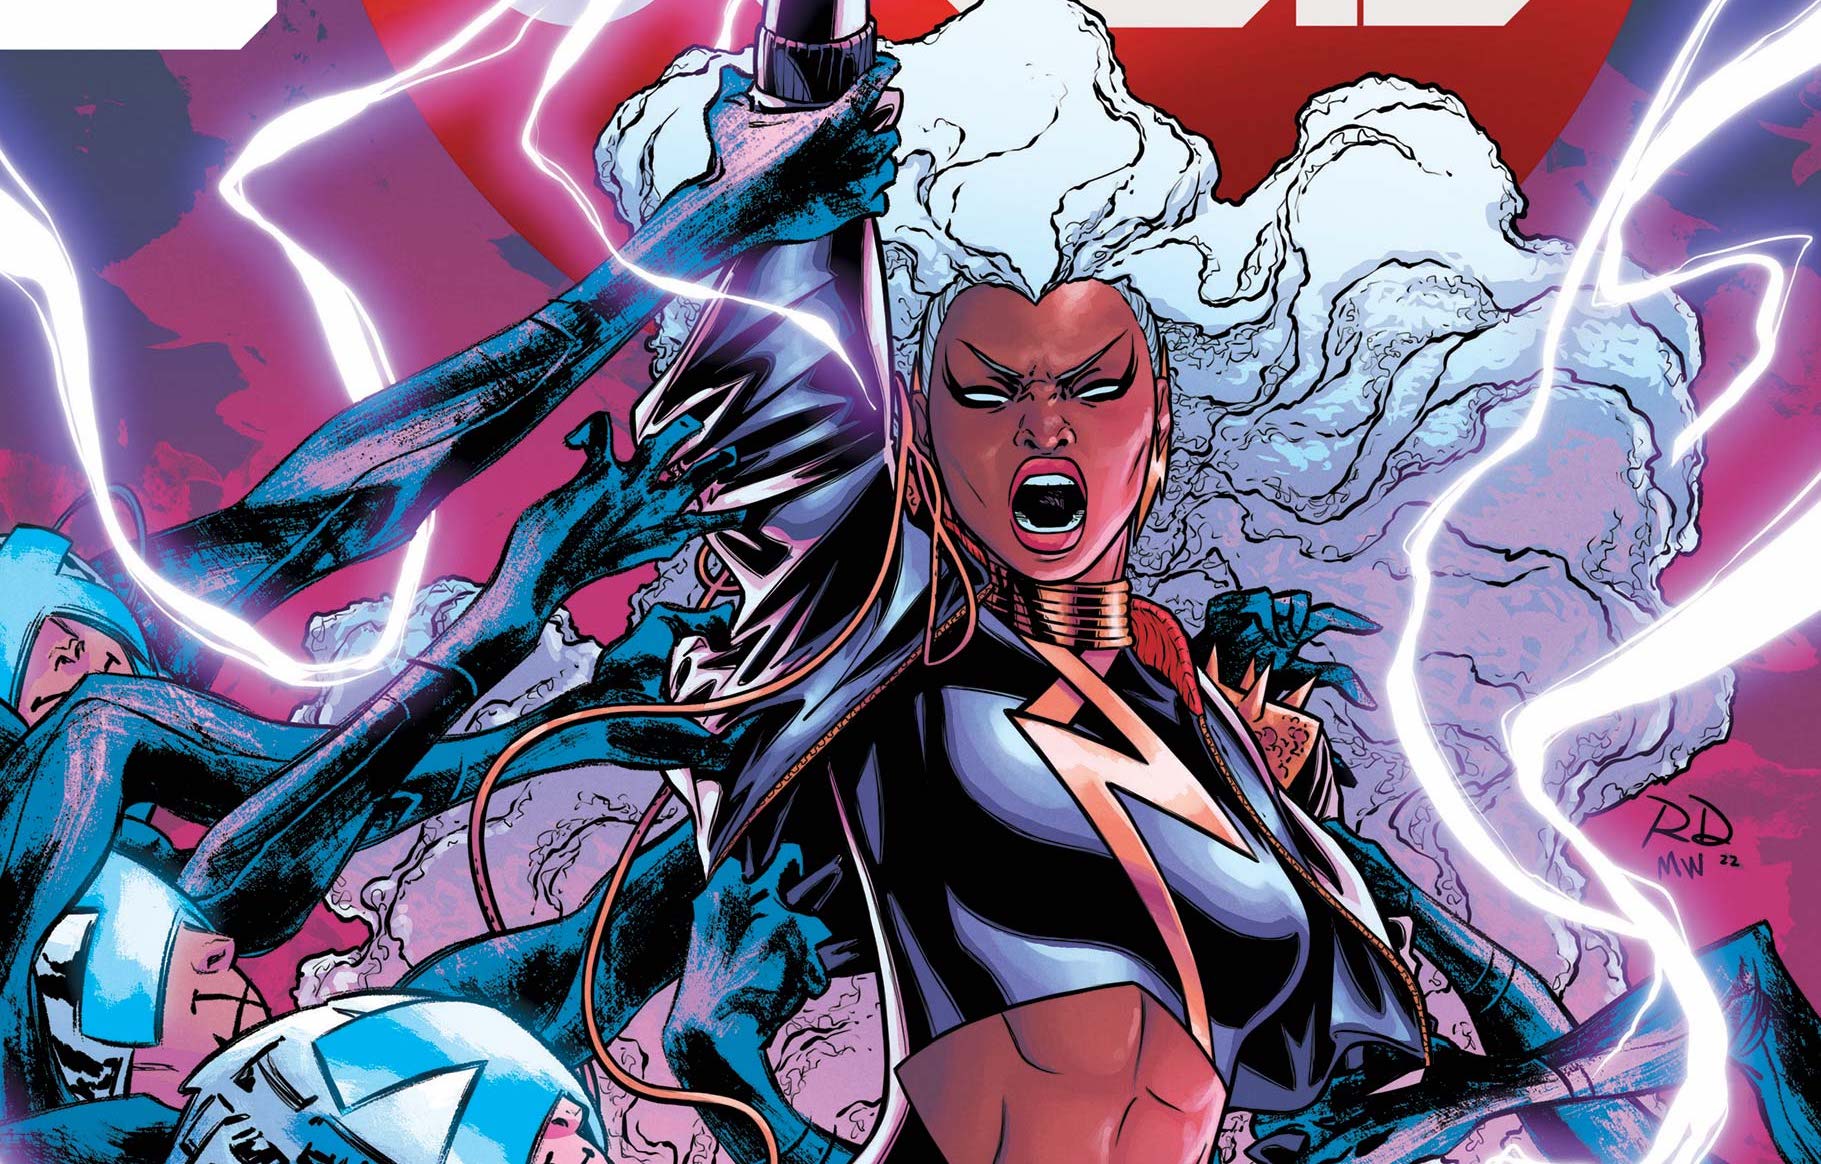 Storm summoning lightning in X-Men Red #11